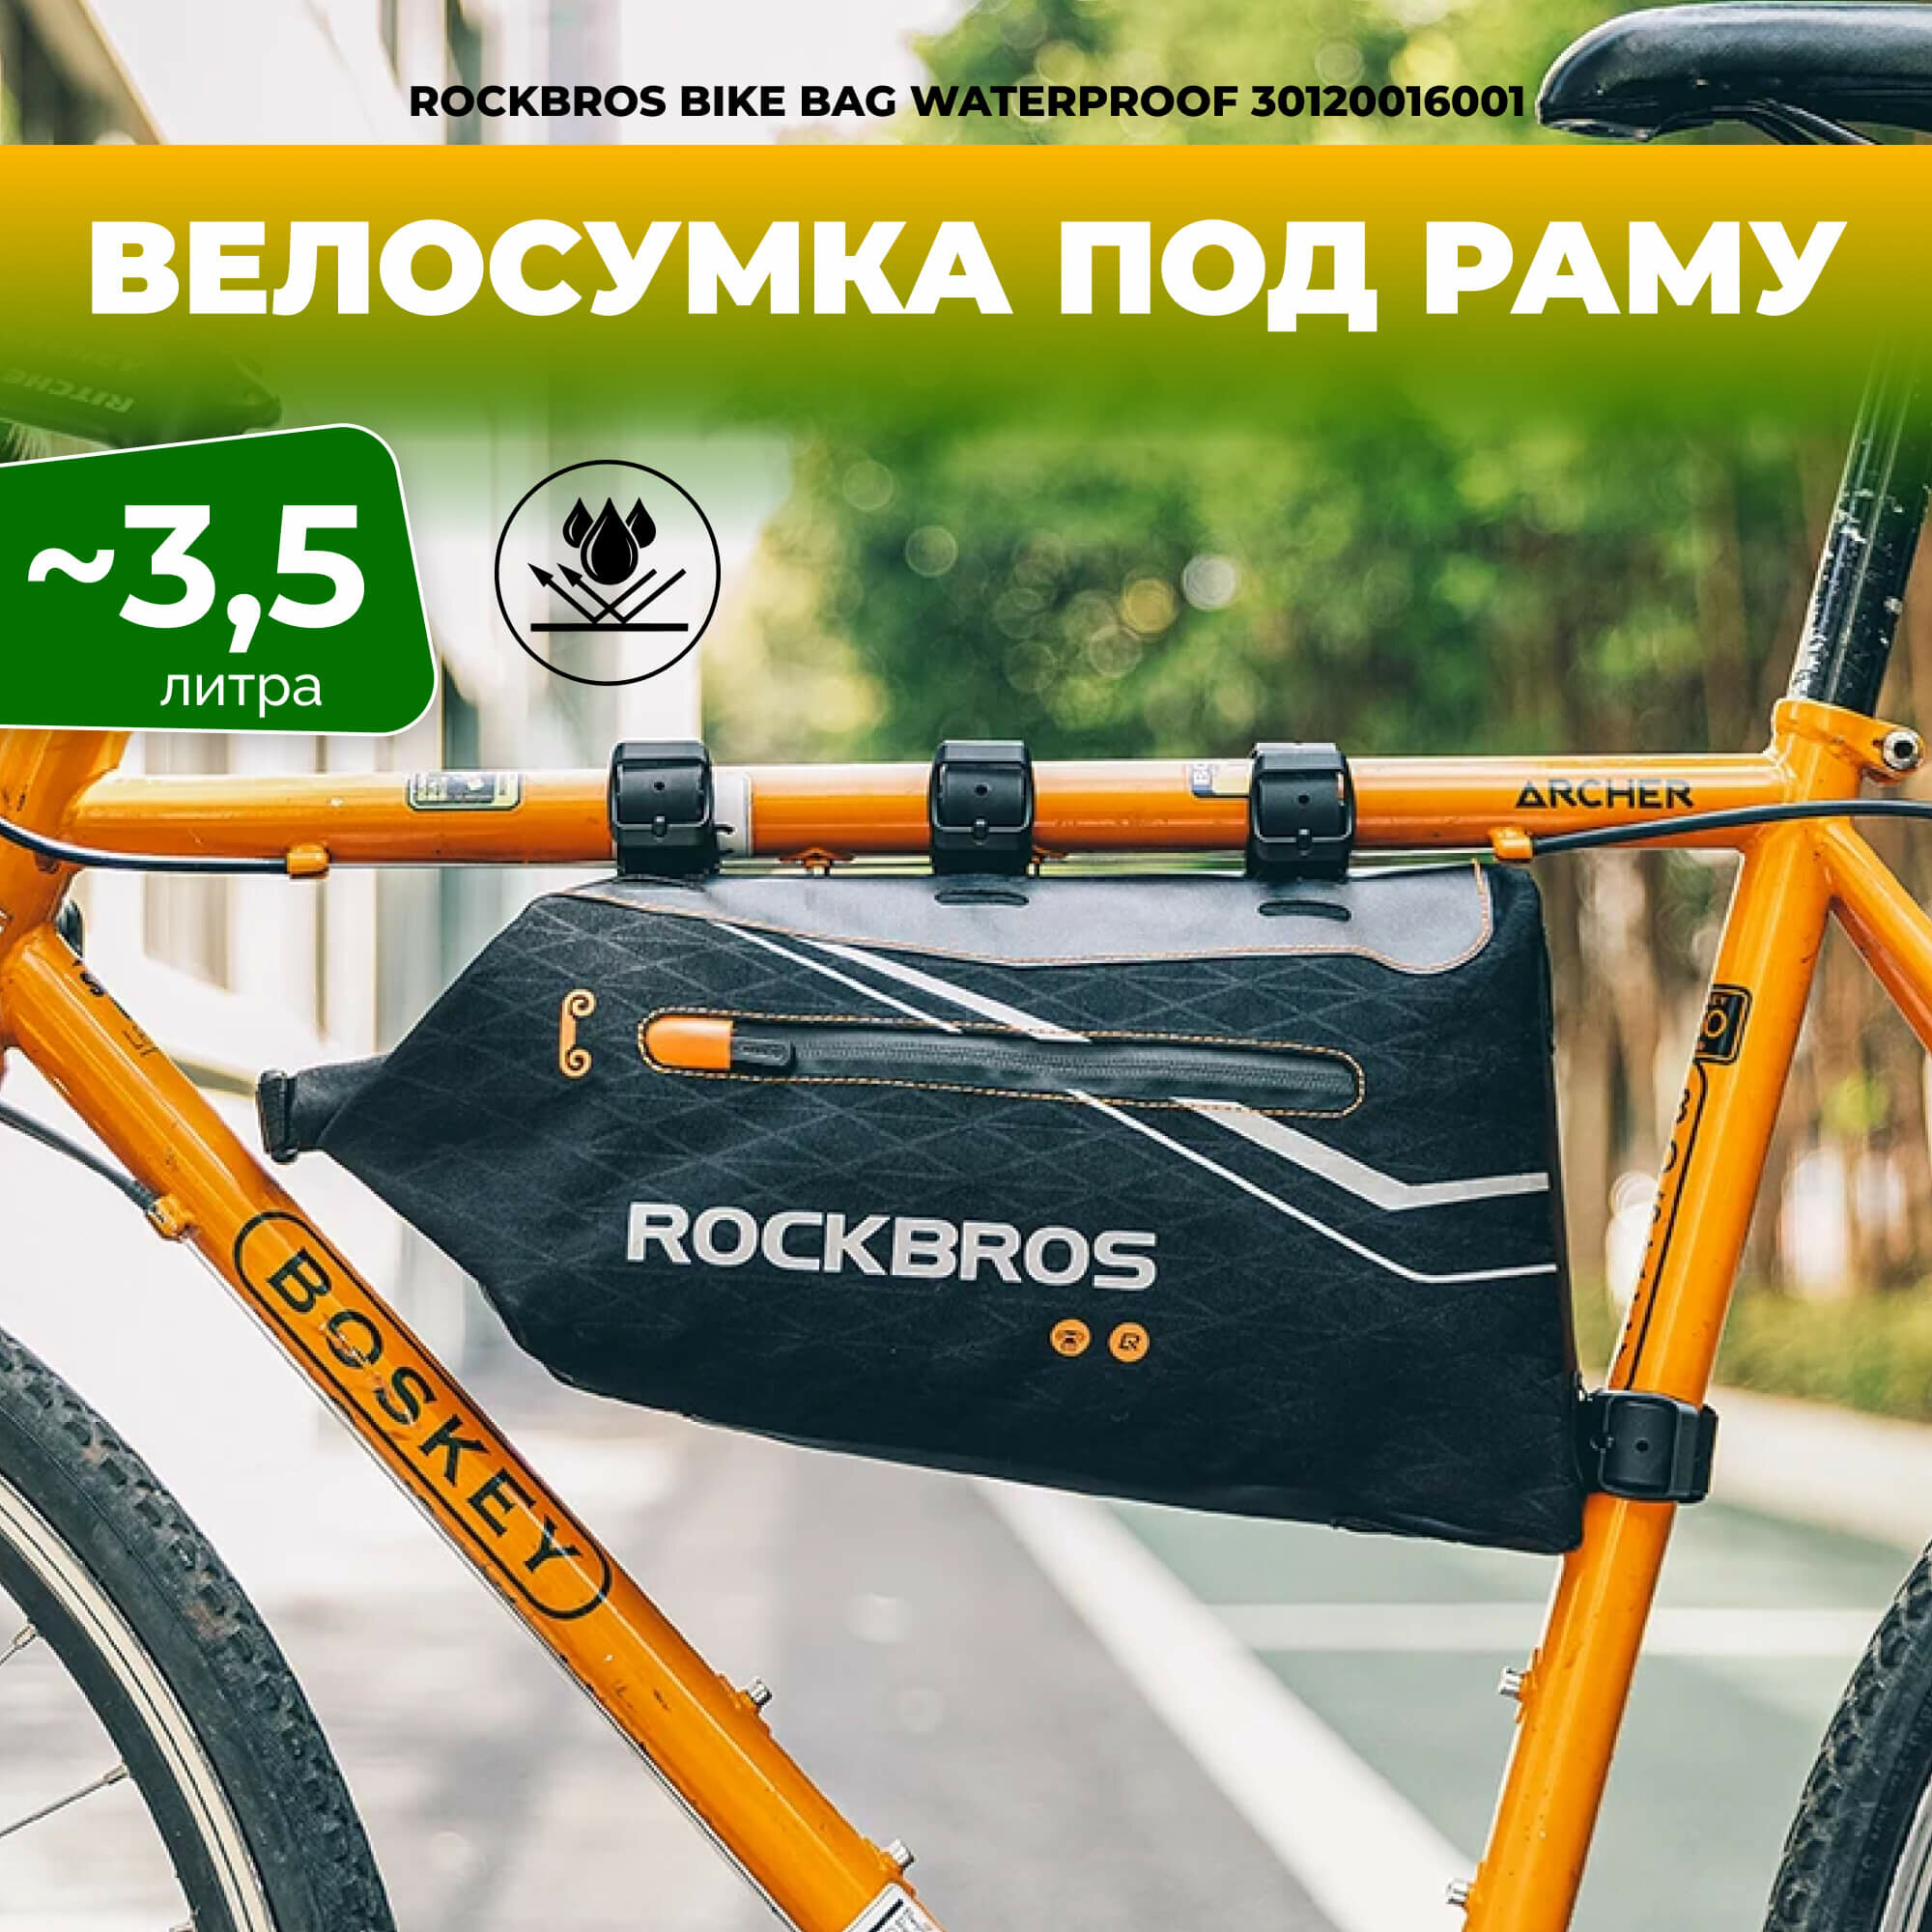 Велосипедная сумка Rockbros 30120016001 подрамная 3.5 л, полностью водонепроницаемая для велосипеда